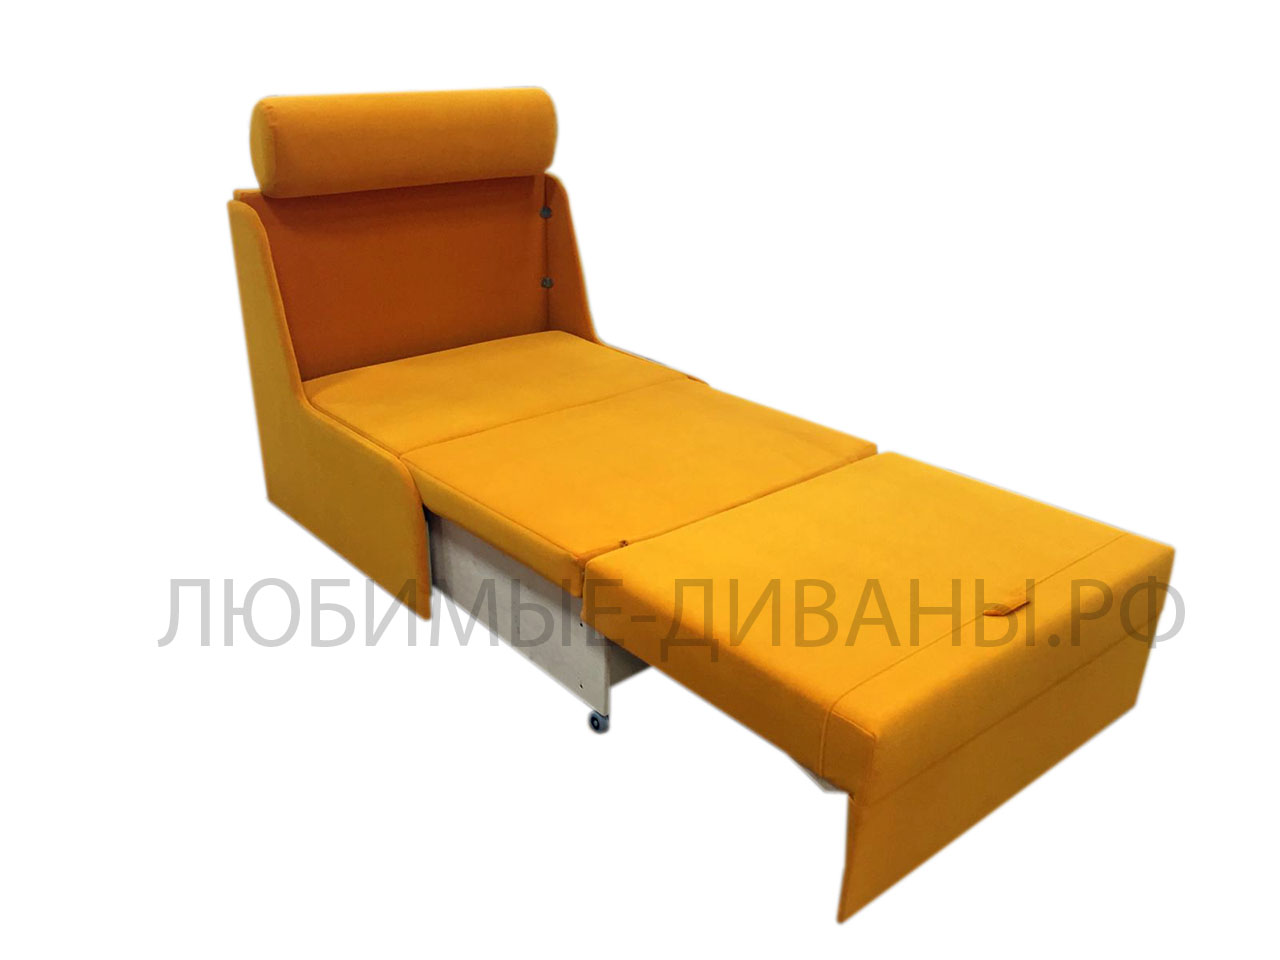 Кресло кровать трансформер Танго-4 Д-70 без подлокотников